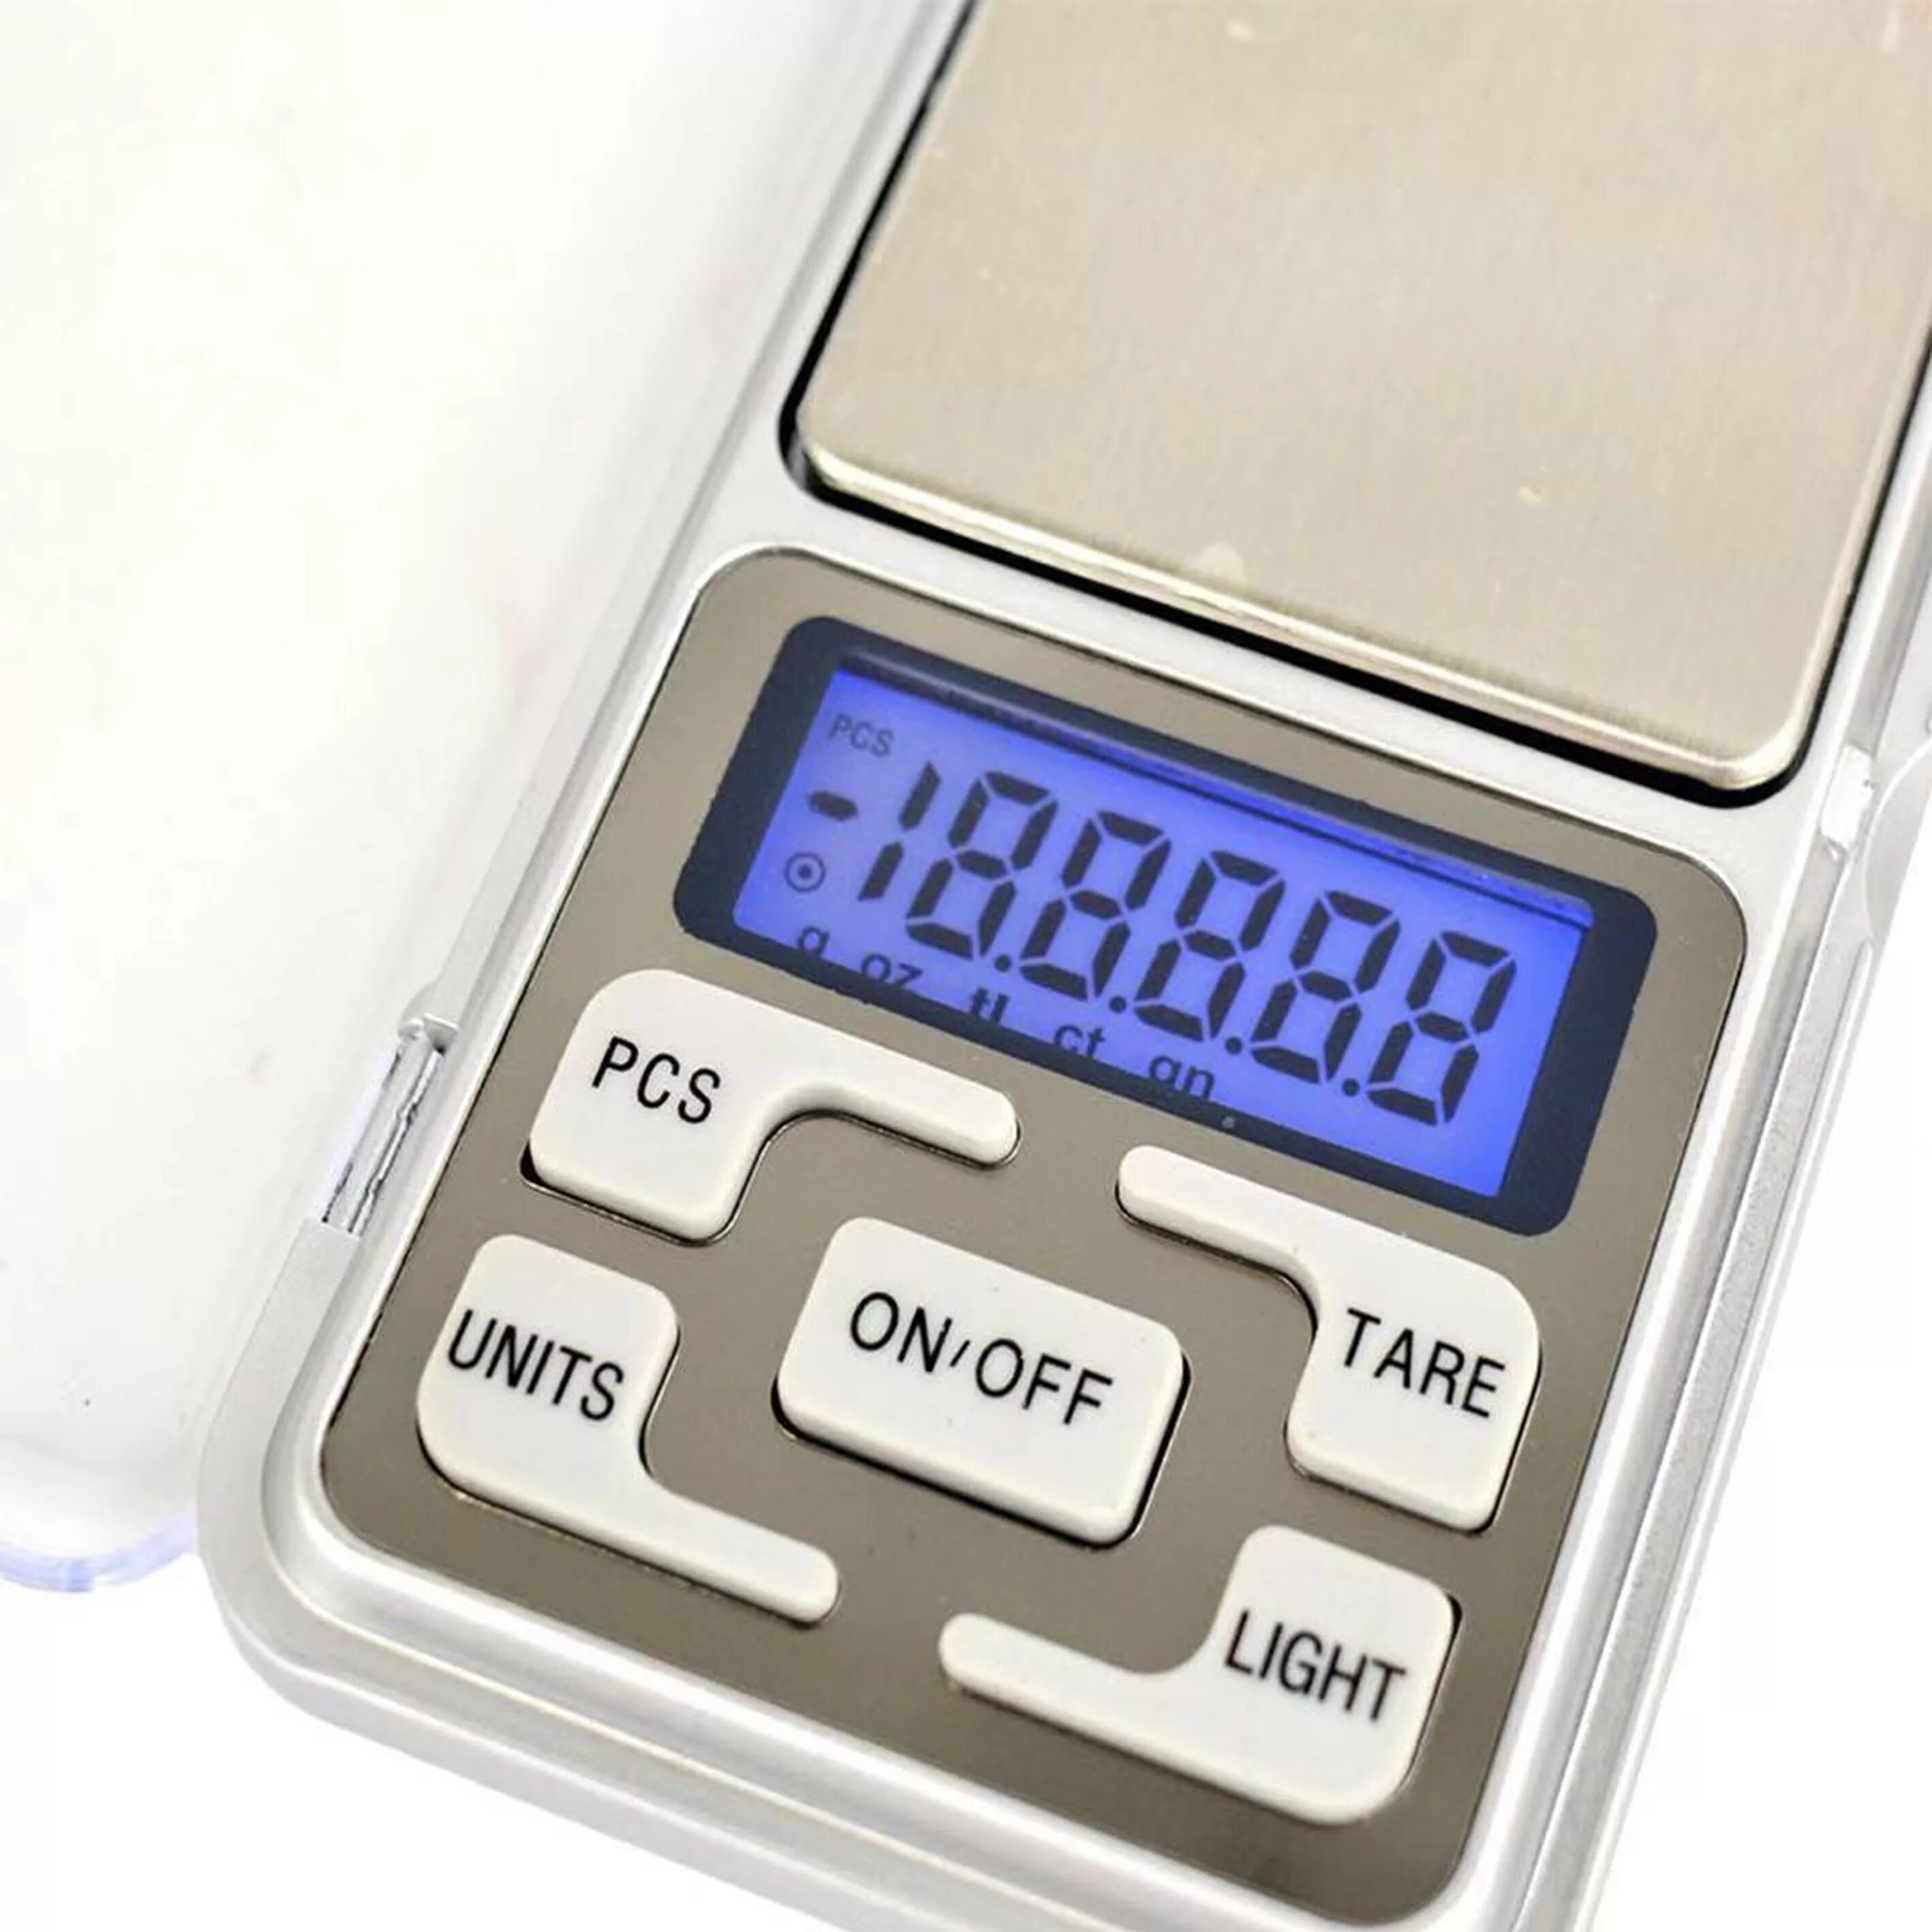 Купить электронные граммов. Весы портативные Эл. MH-500 Pocket Scale 500гр точность 0,1гр. Pocket Scale MH-500 весы ювелирные электронные карманные 500 г/0,1 г. Весы электронные, 500g х 0,1 г. Электронные весы Mini 200g.